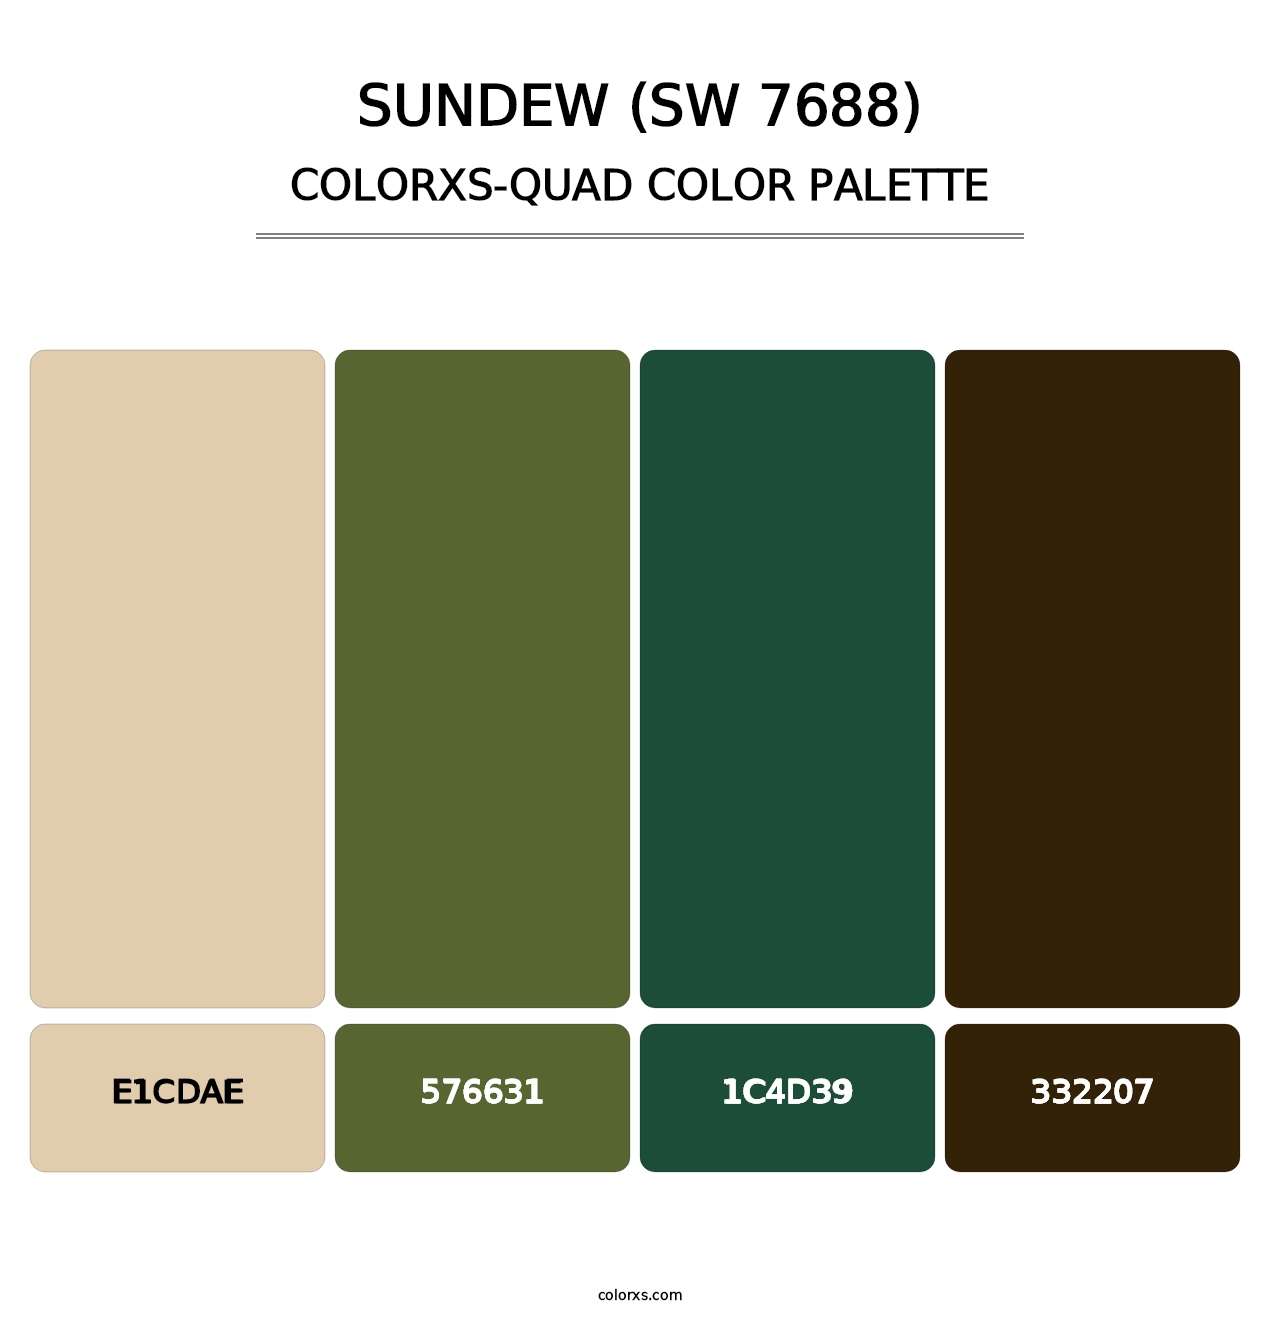 Sundew (SW 7688) - Colorxs Quad Palette